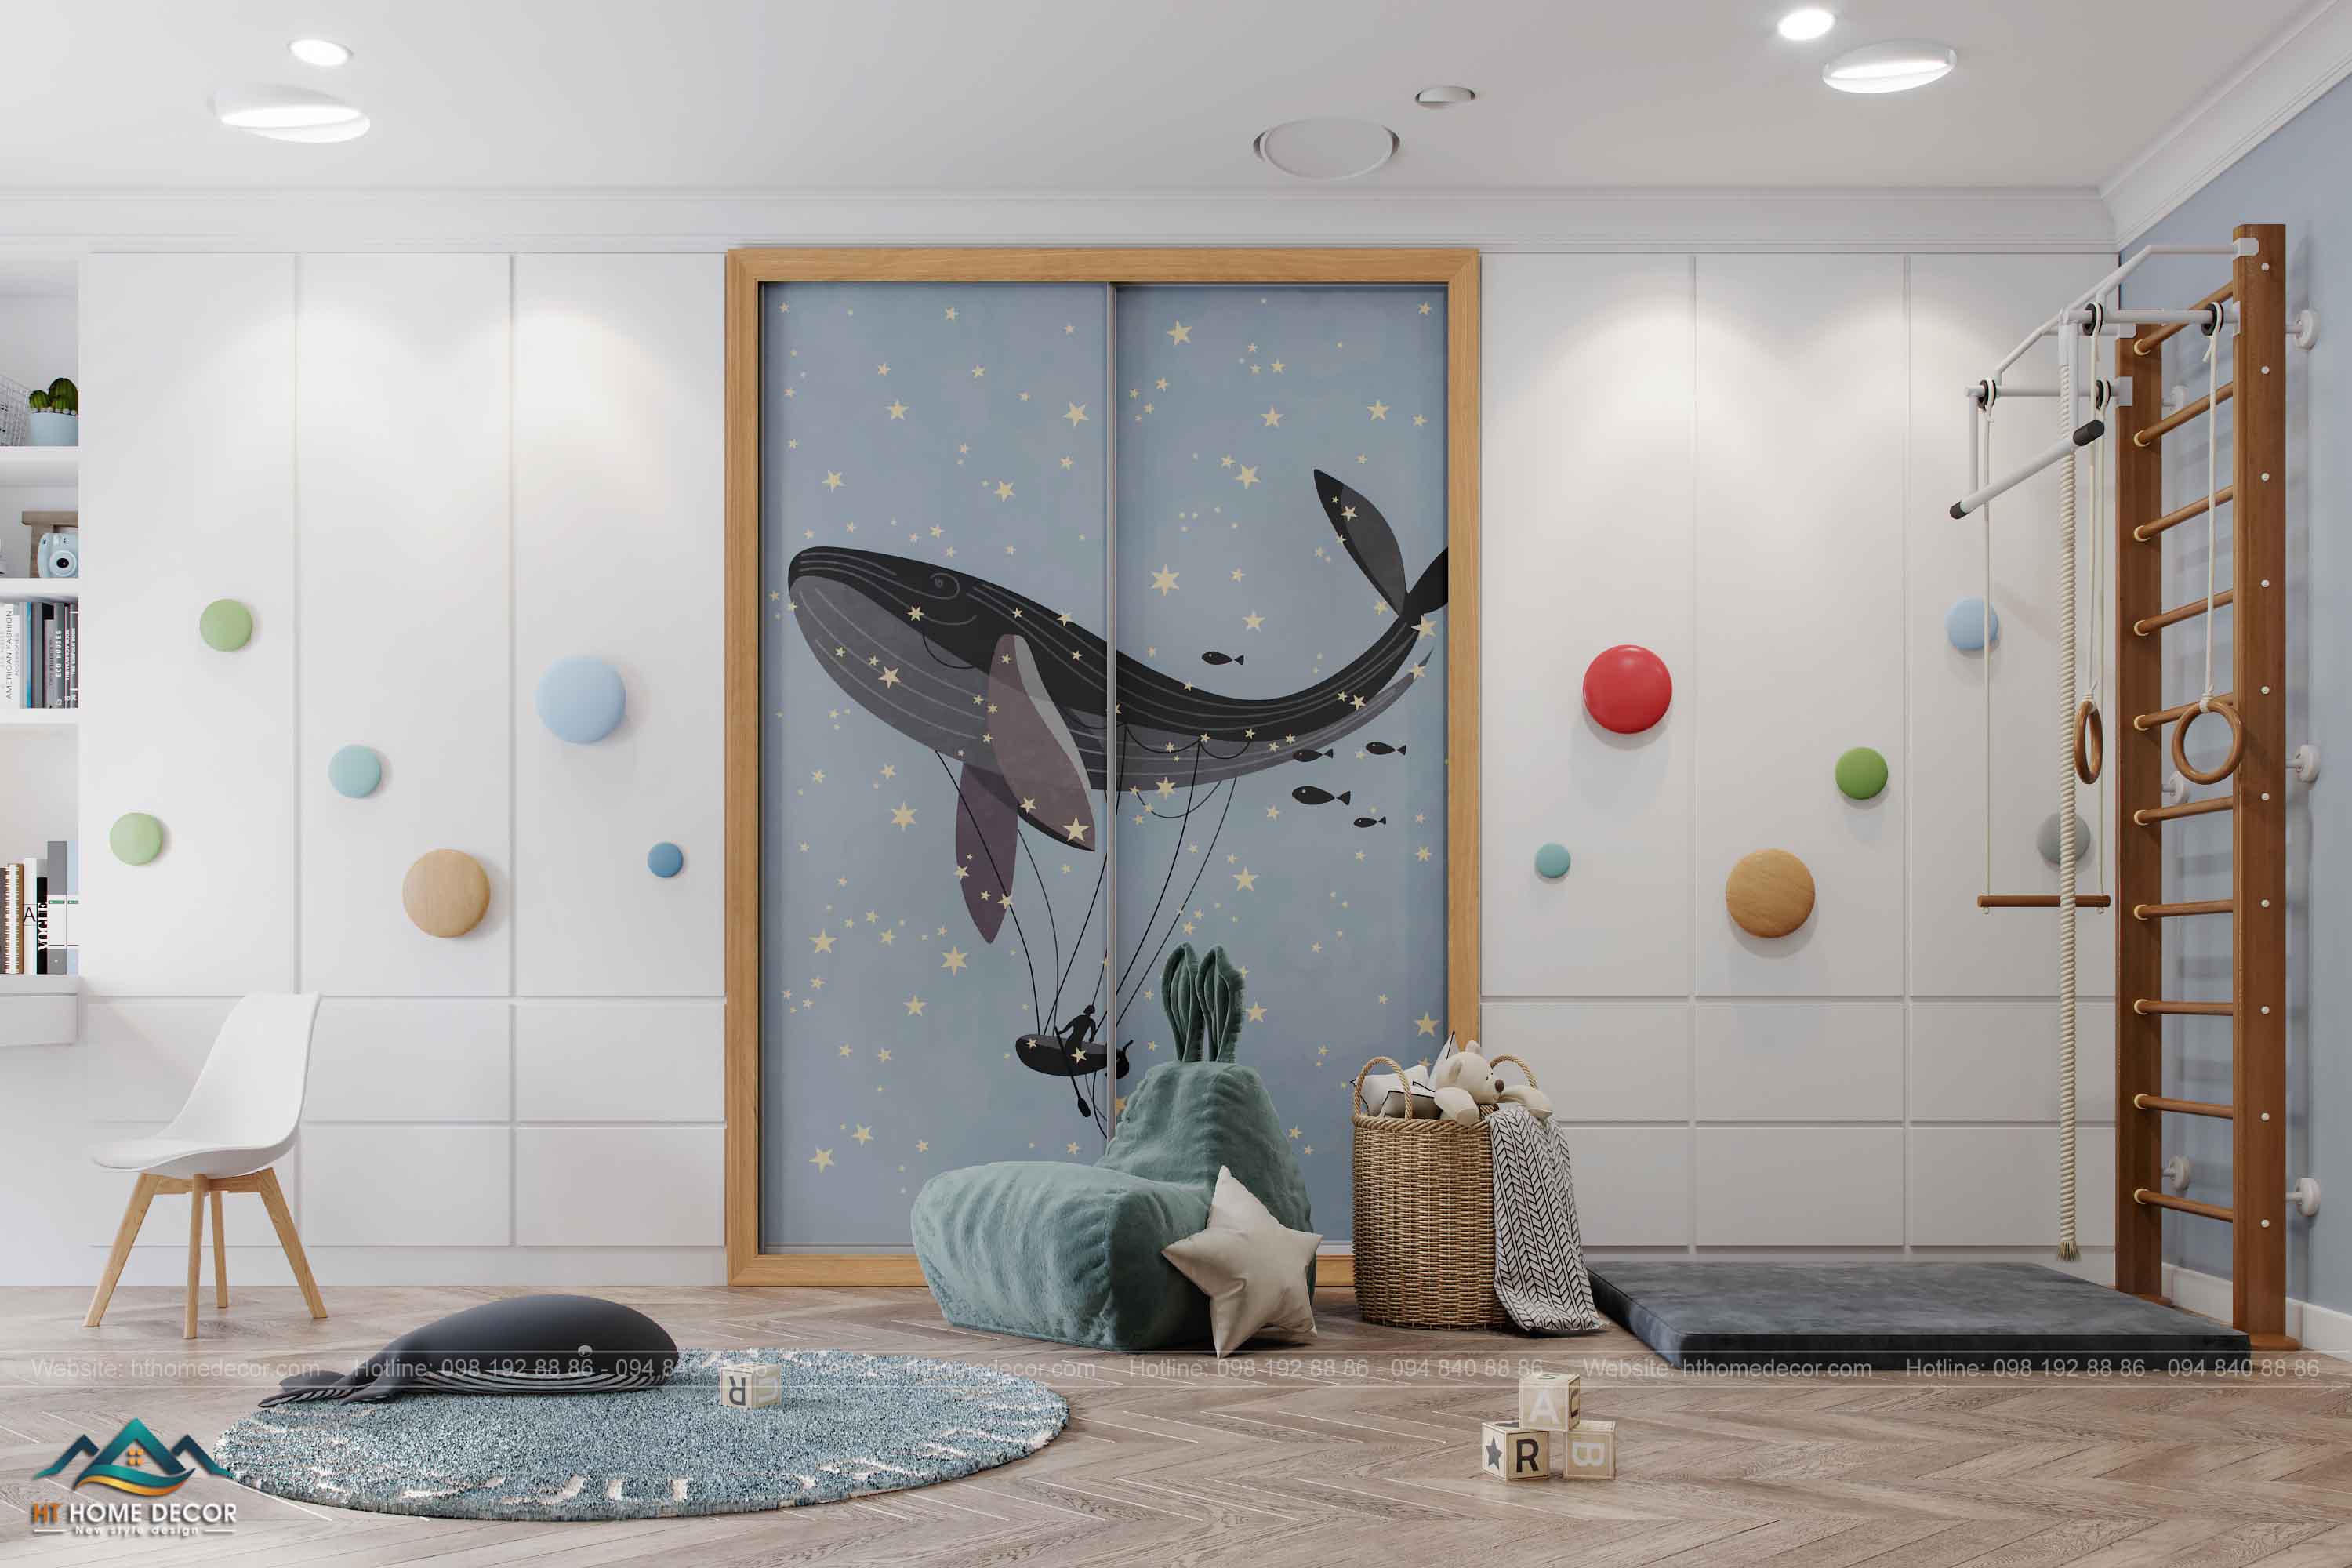 Đối diện giường là khu vui chơi và học tập. Đèn chiếu được lắp đặt trên trần nhà. Bức tường được trang trí tranh theo phong cách Thụy Điển. Tất cả điều này giúp căn phòng trở thành một không gian đa chức năng kích thích trẻ sáng tạo.